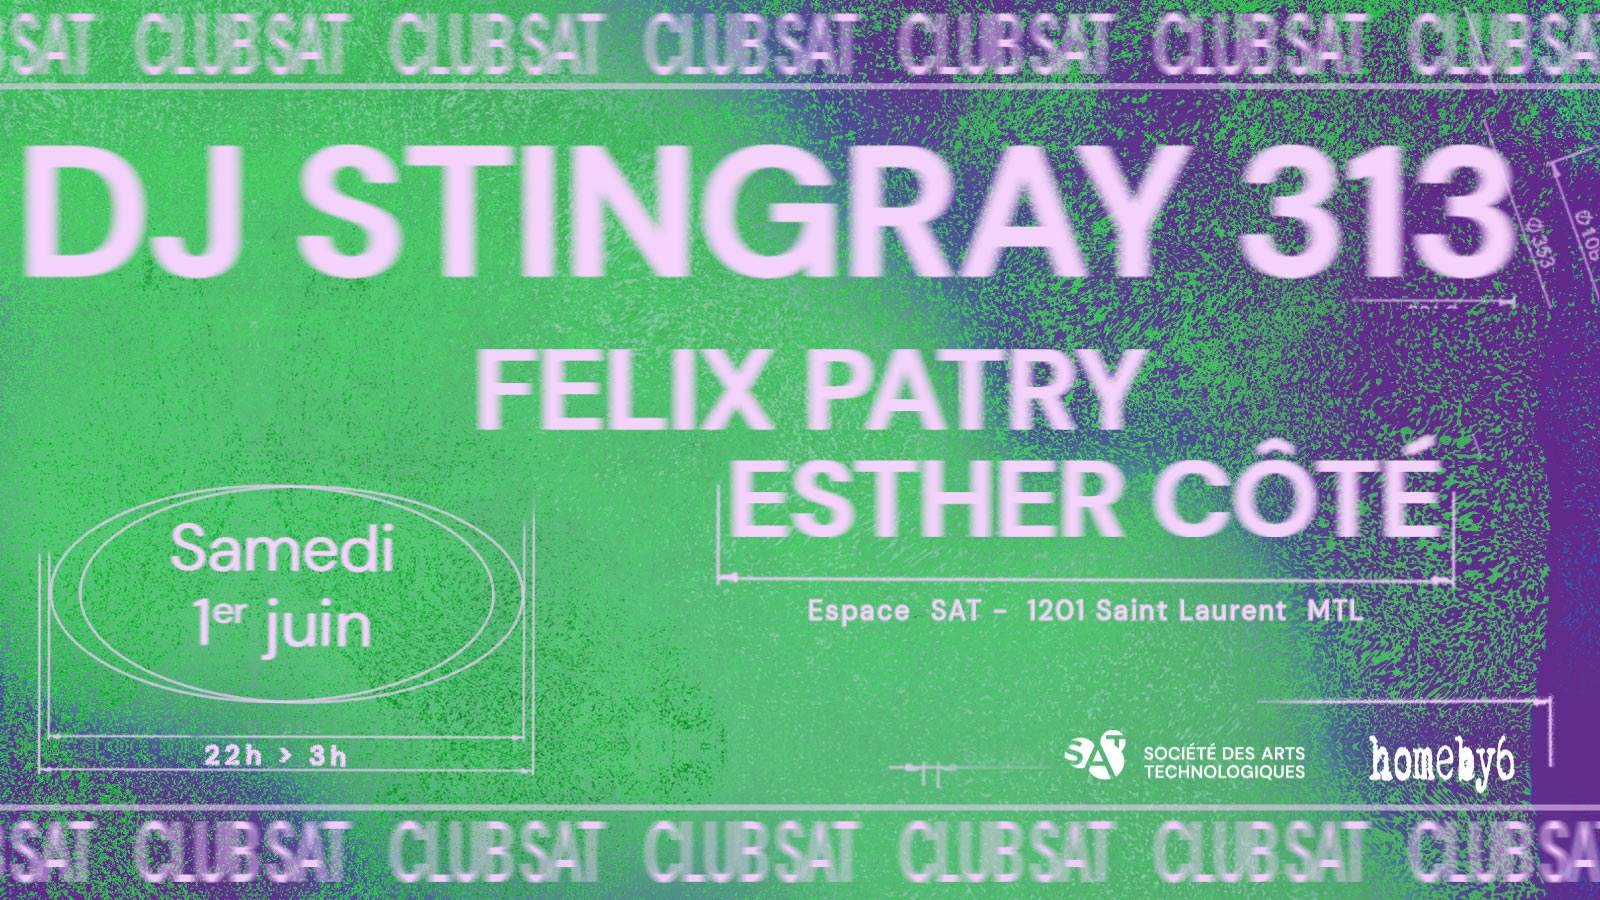 Club SAT — DJ Stingray 313 • Felix Patry • Esther Côté - フライヤー表